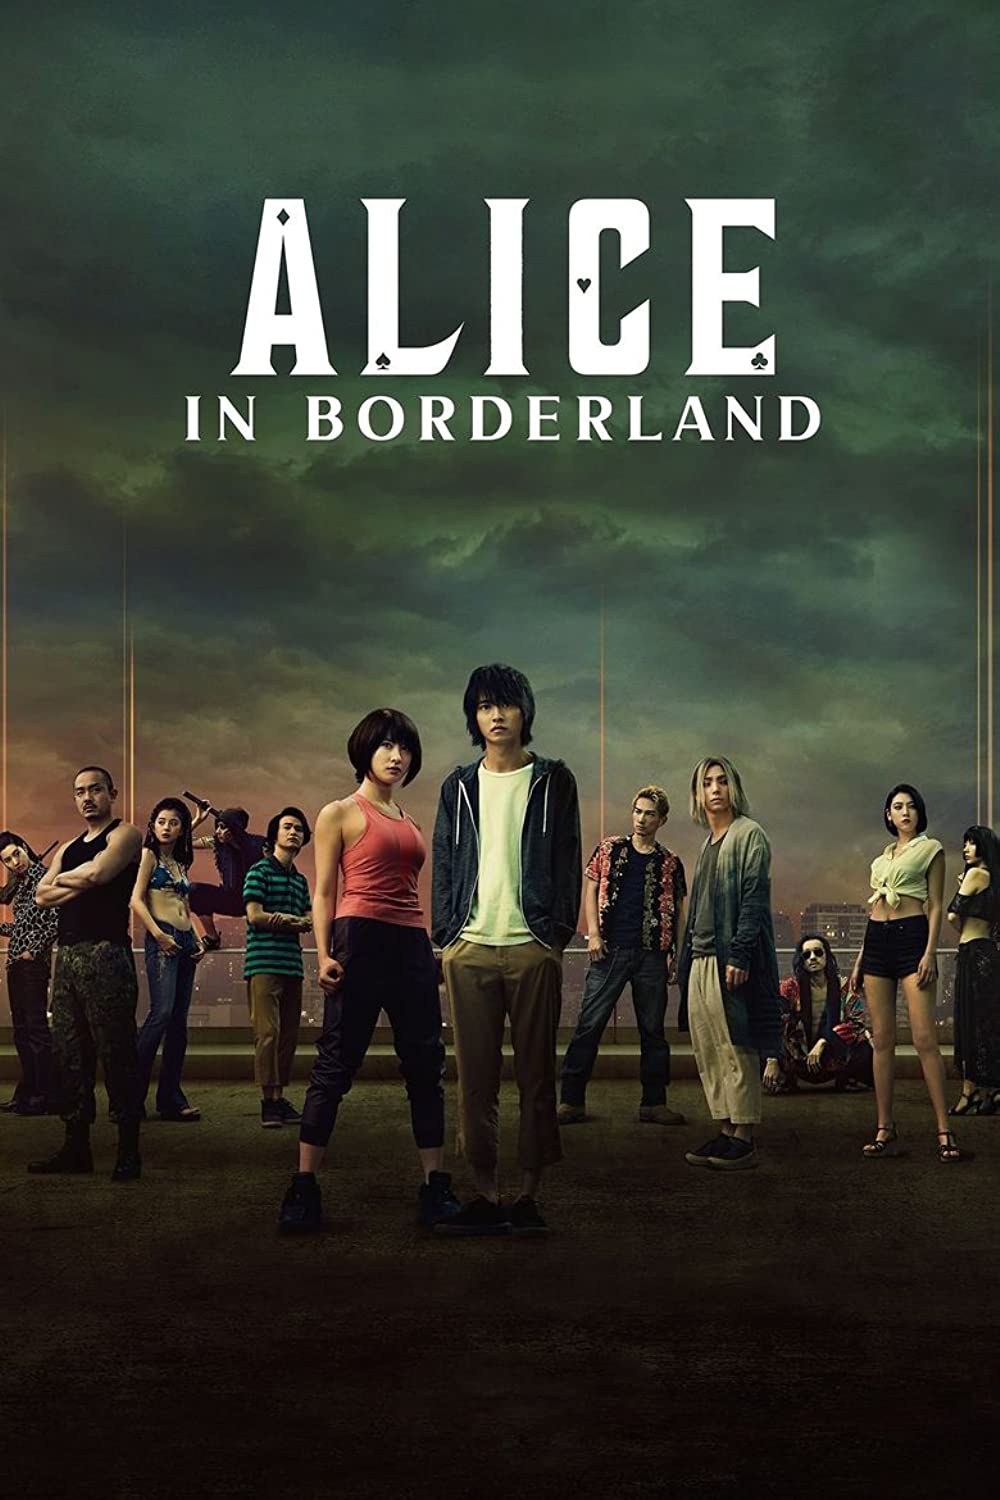 Filmbeschreibung zu Alice in Borderland